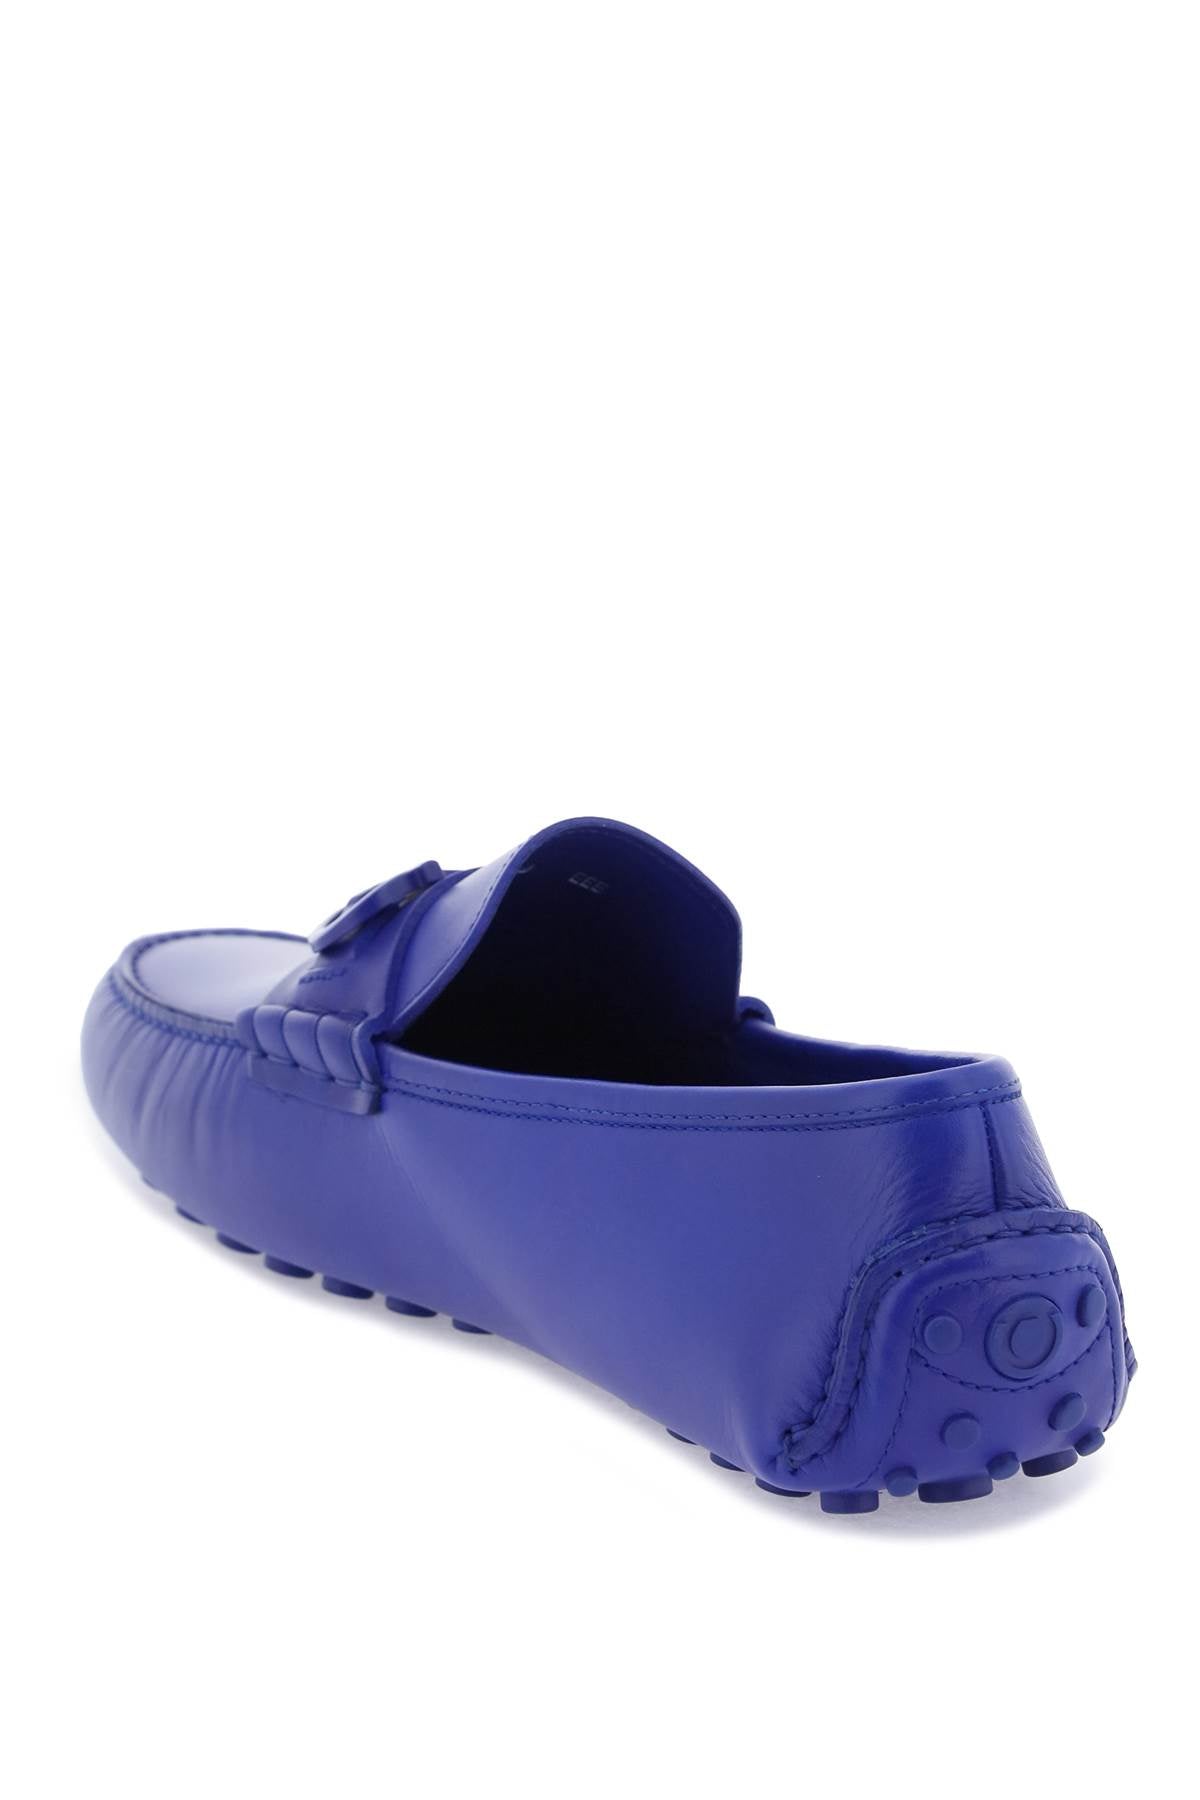 Giày Moccasin da bò mềm màu xanh navy có móc Gancini